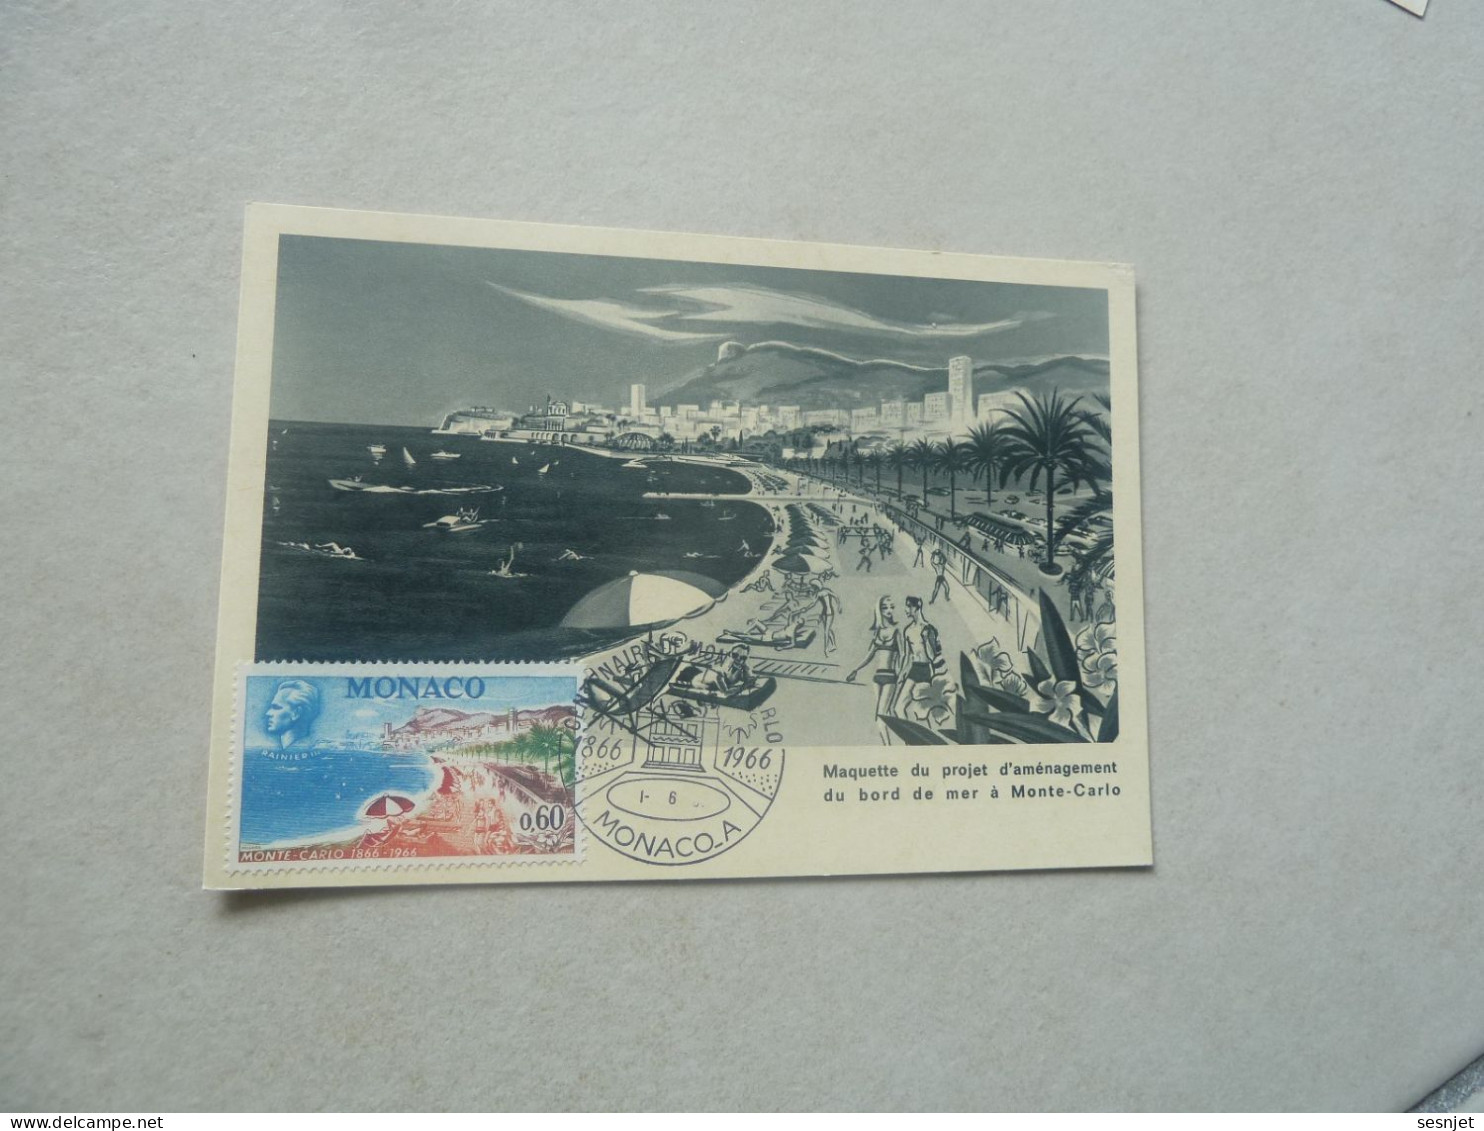 Monaco - Maquette Du Projet D'Aménagement - 0f.60 - Yt 694 - Carte Premier Jour D'Emission - Année 1966 - - Maximumkaarten